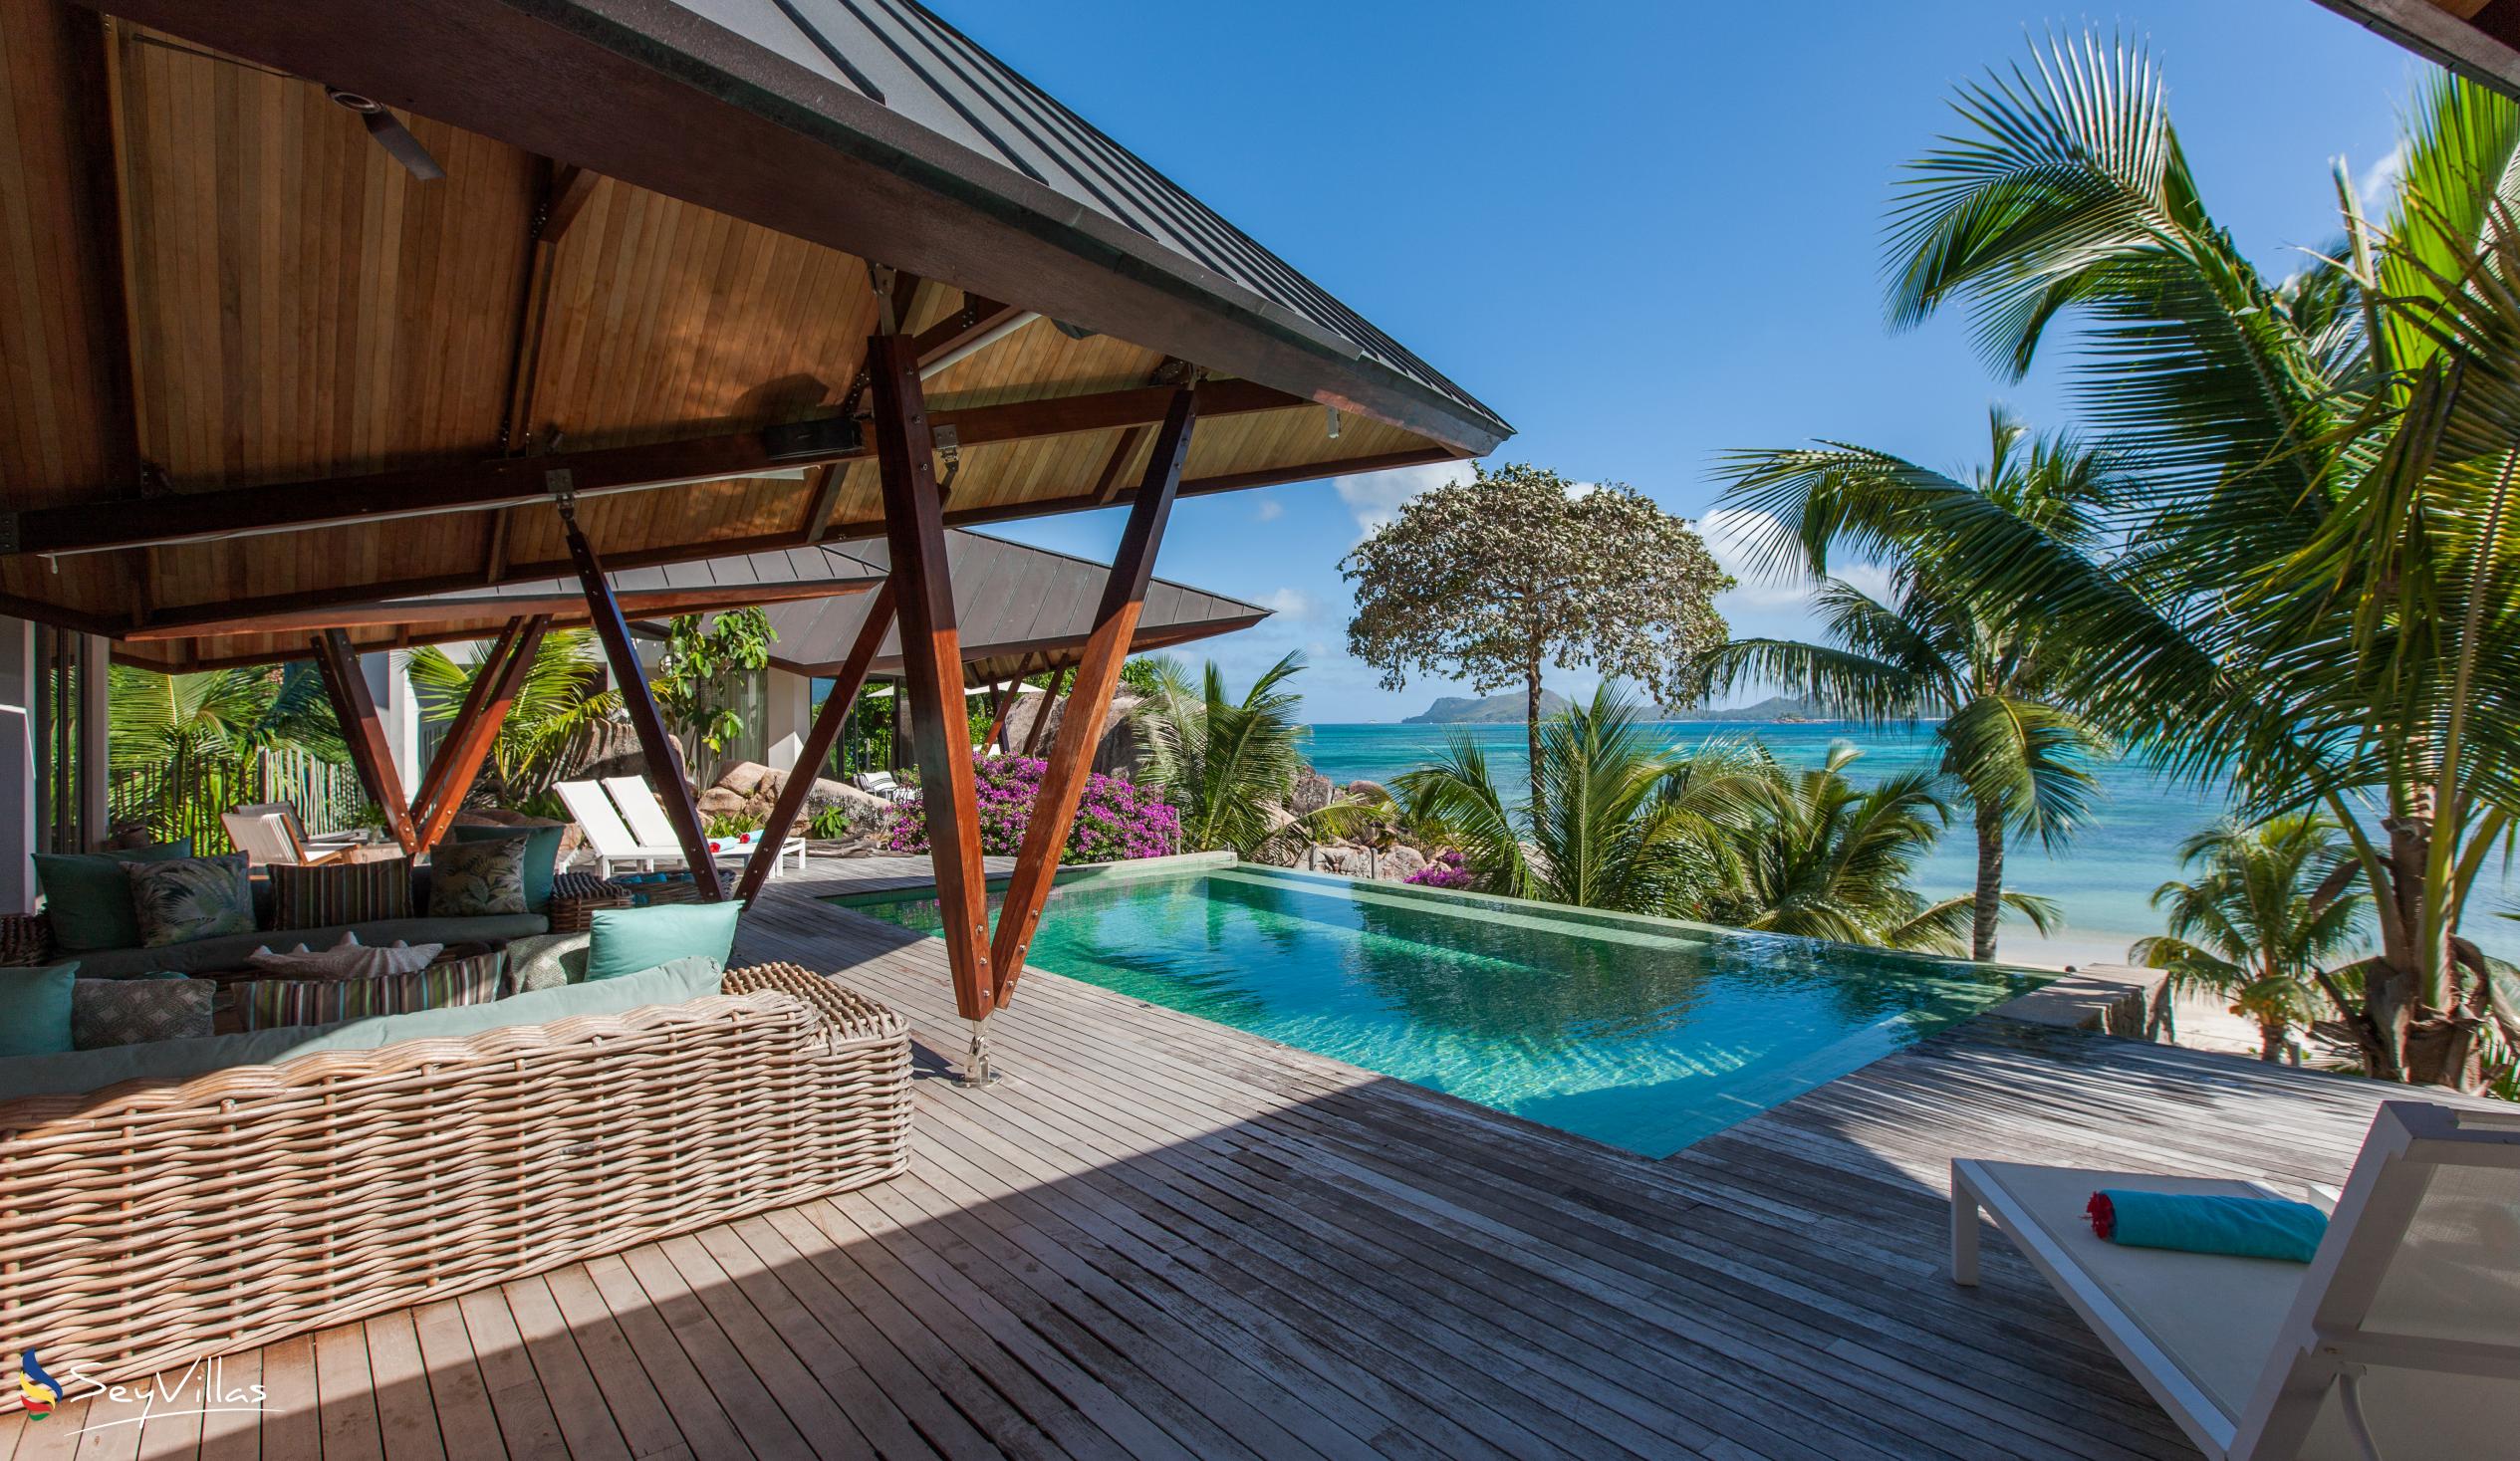 Foto 12: Villa Deckenia - Aussenbereich - Praslin (Seychellen)